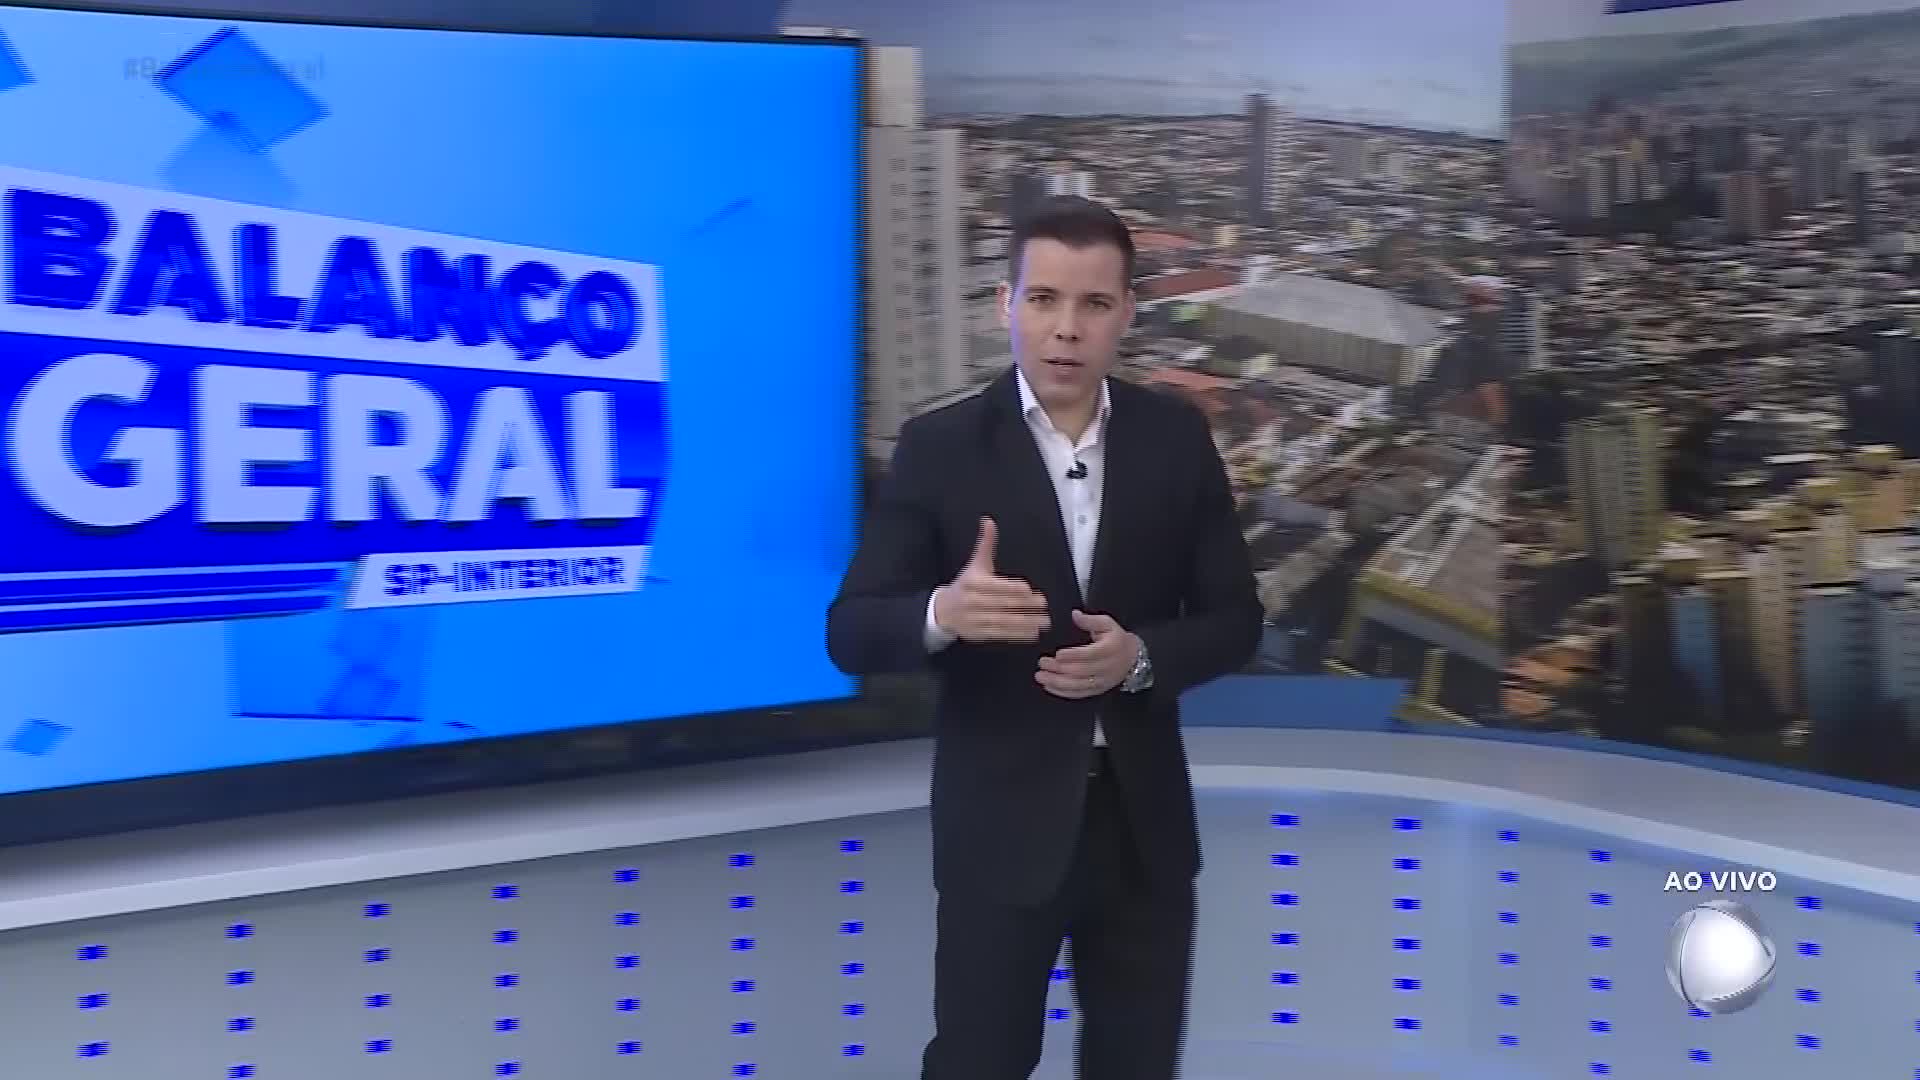 Vídeo: Morada do Capiau - Balanço Geral - Exibido 07/12/2023